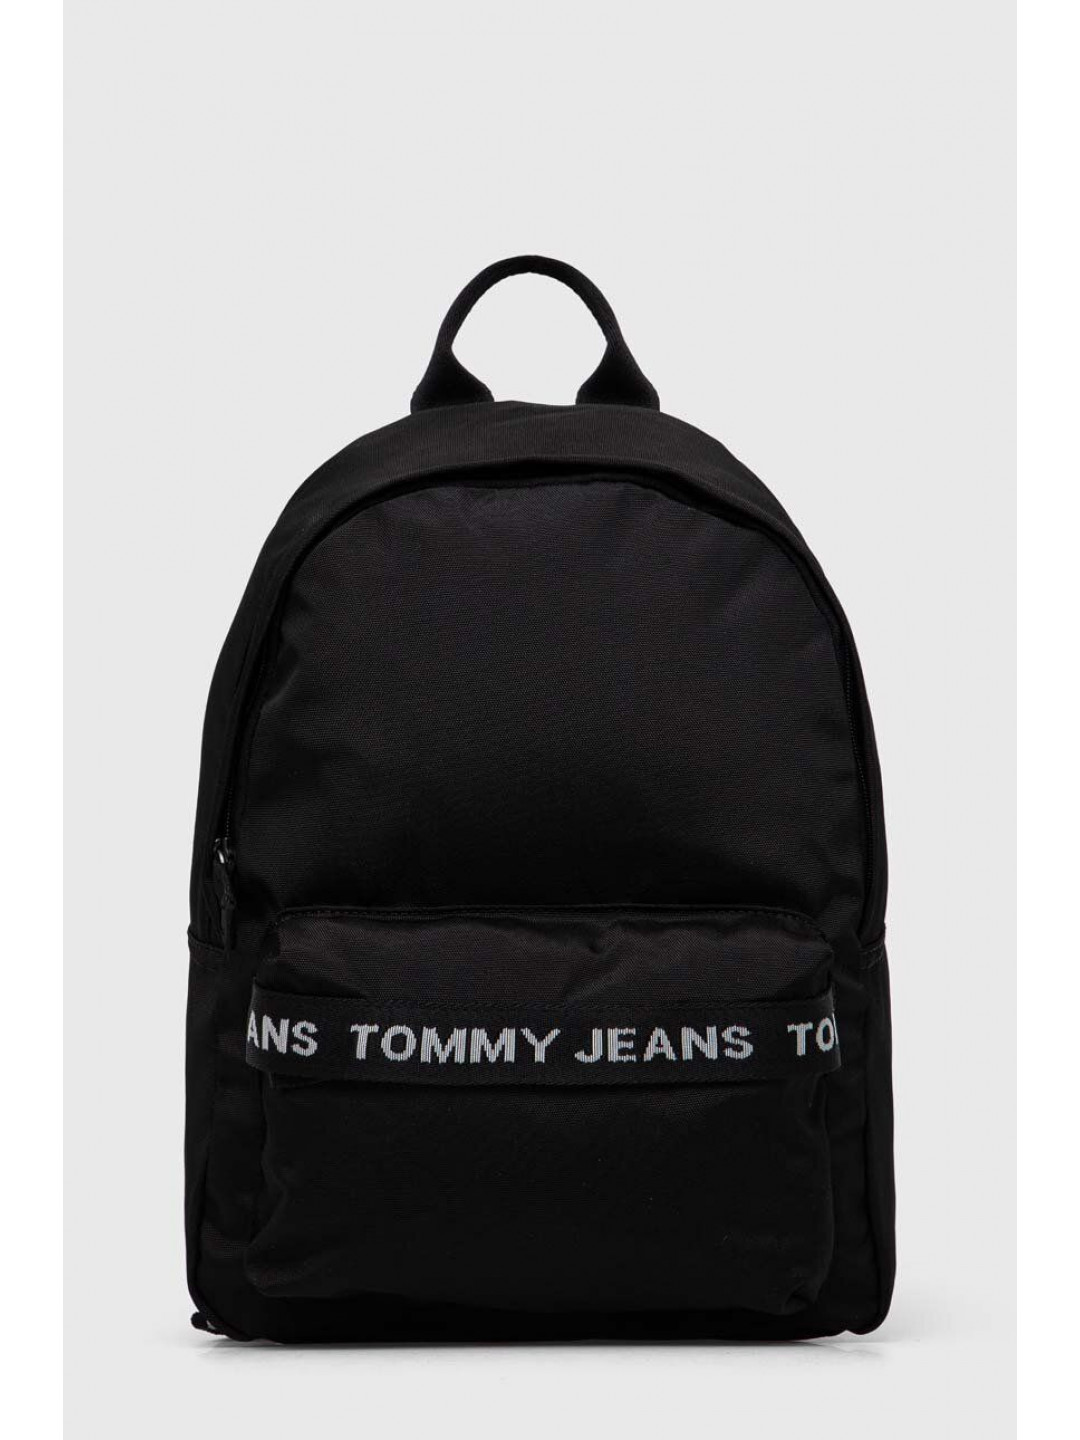 Batoh Tommy Jeans dámský černá barva malý s potiskem